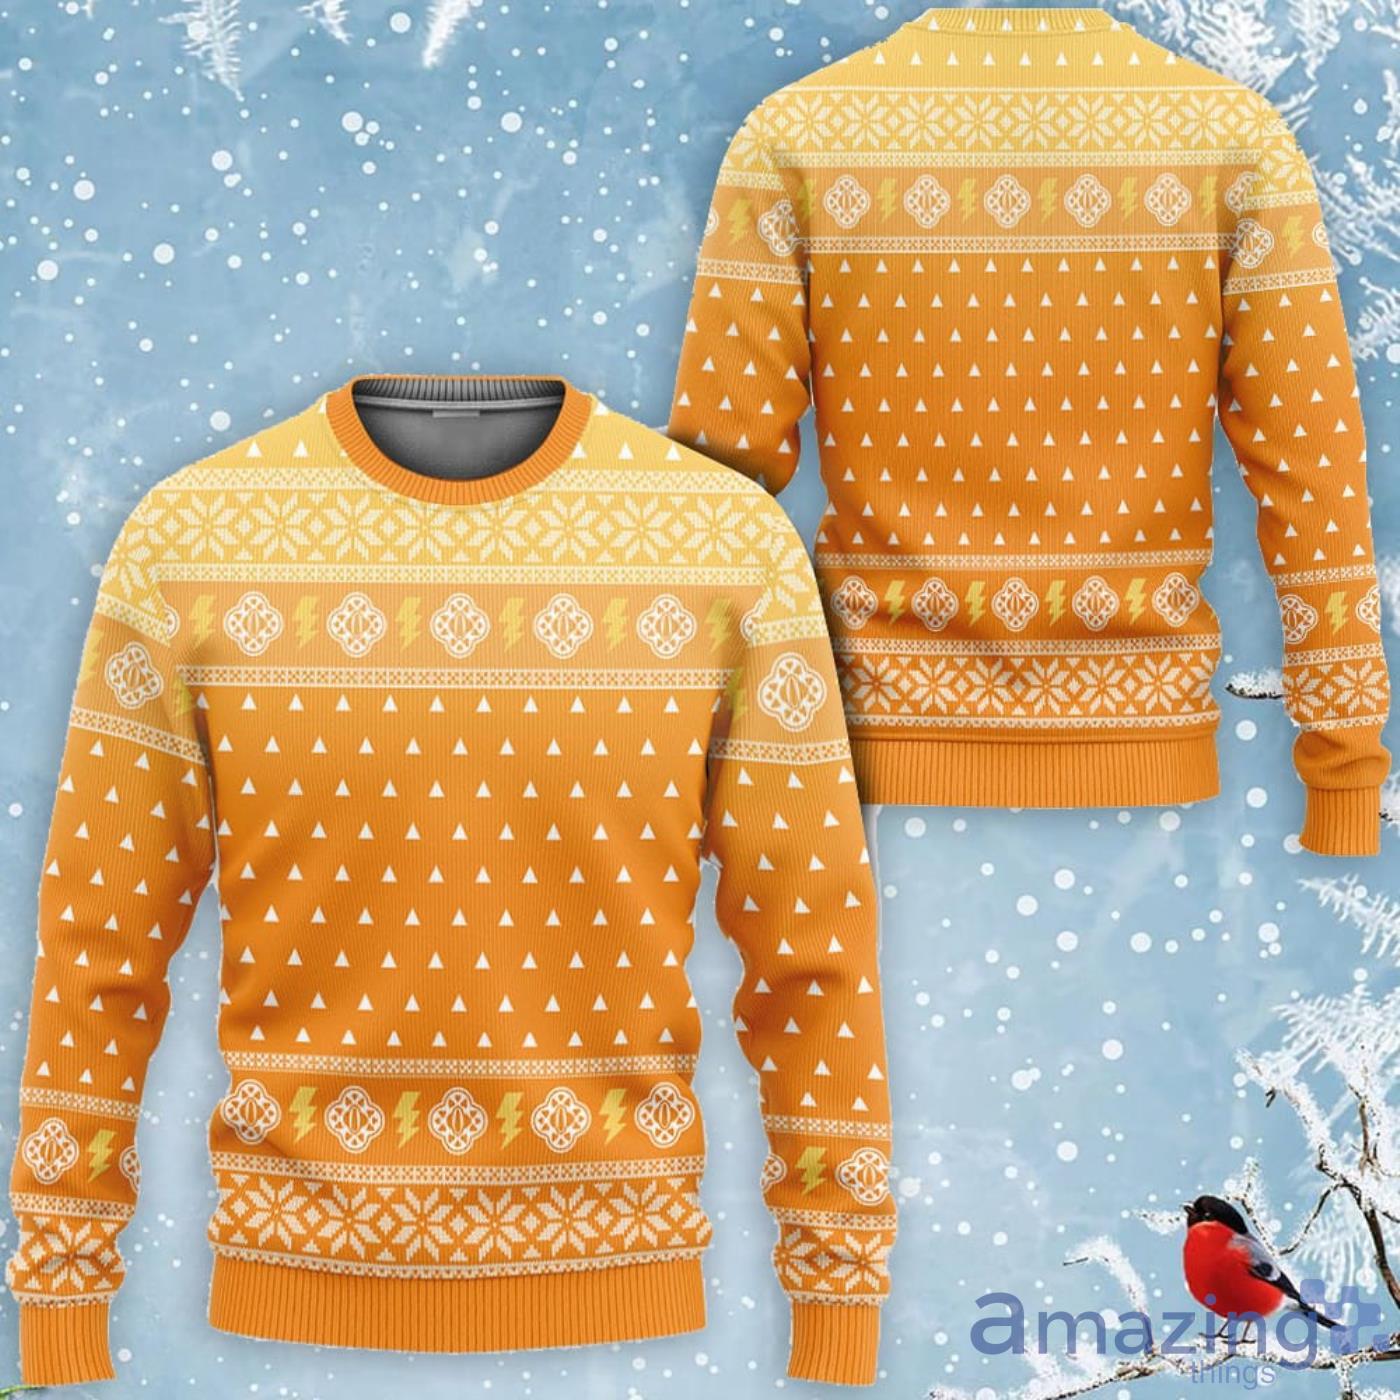 Kimetsu Zenitsu Custom Anime Ugly Christmas Sweater Product Photo 1